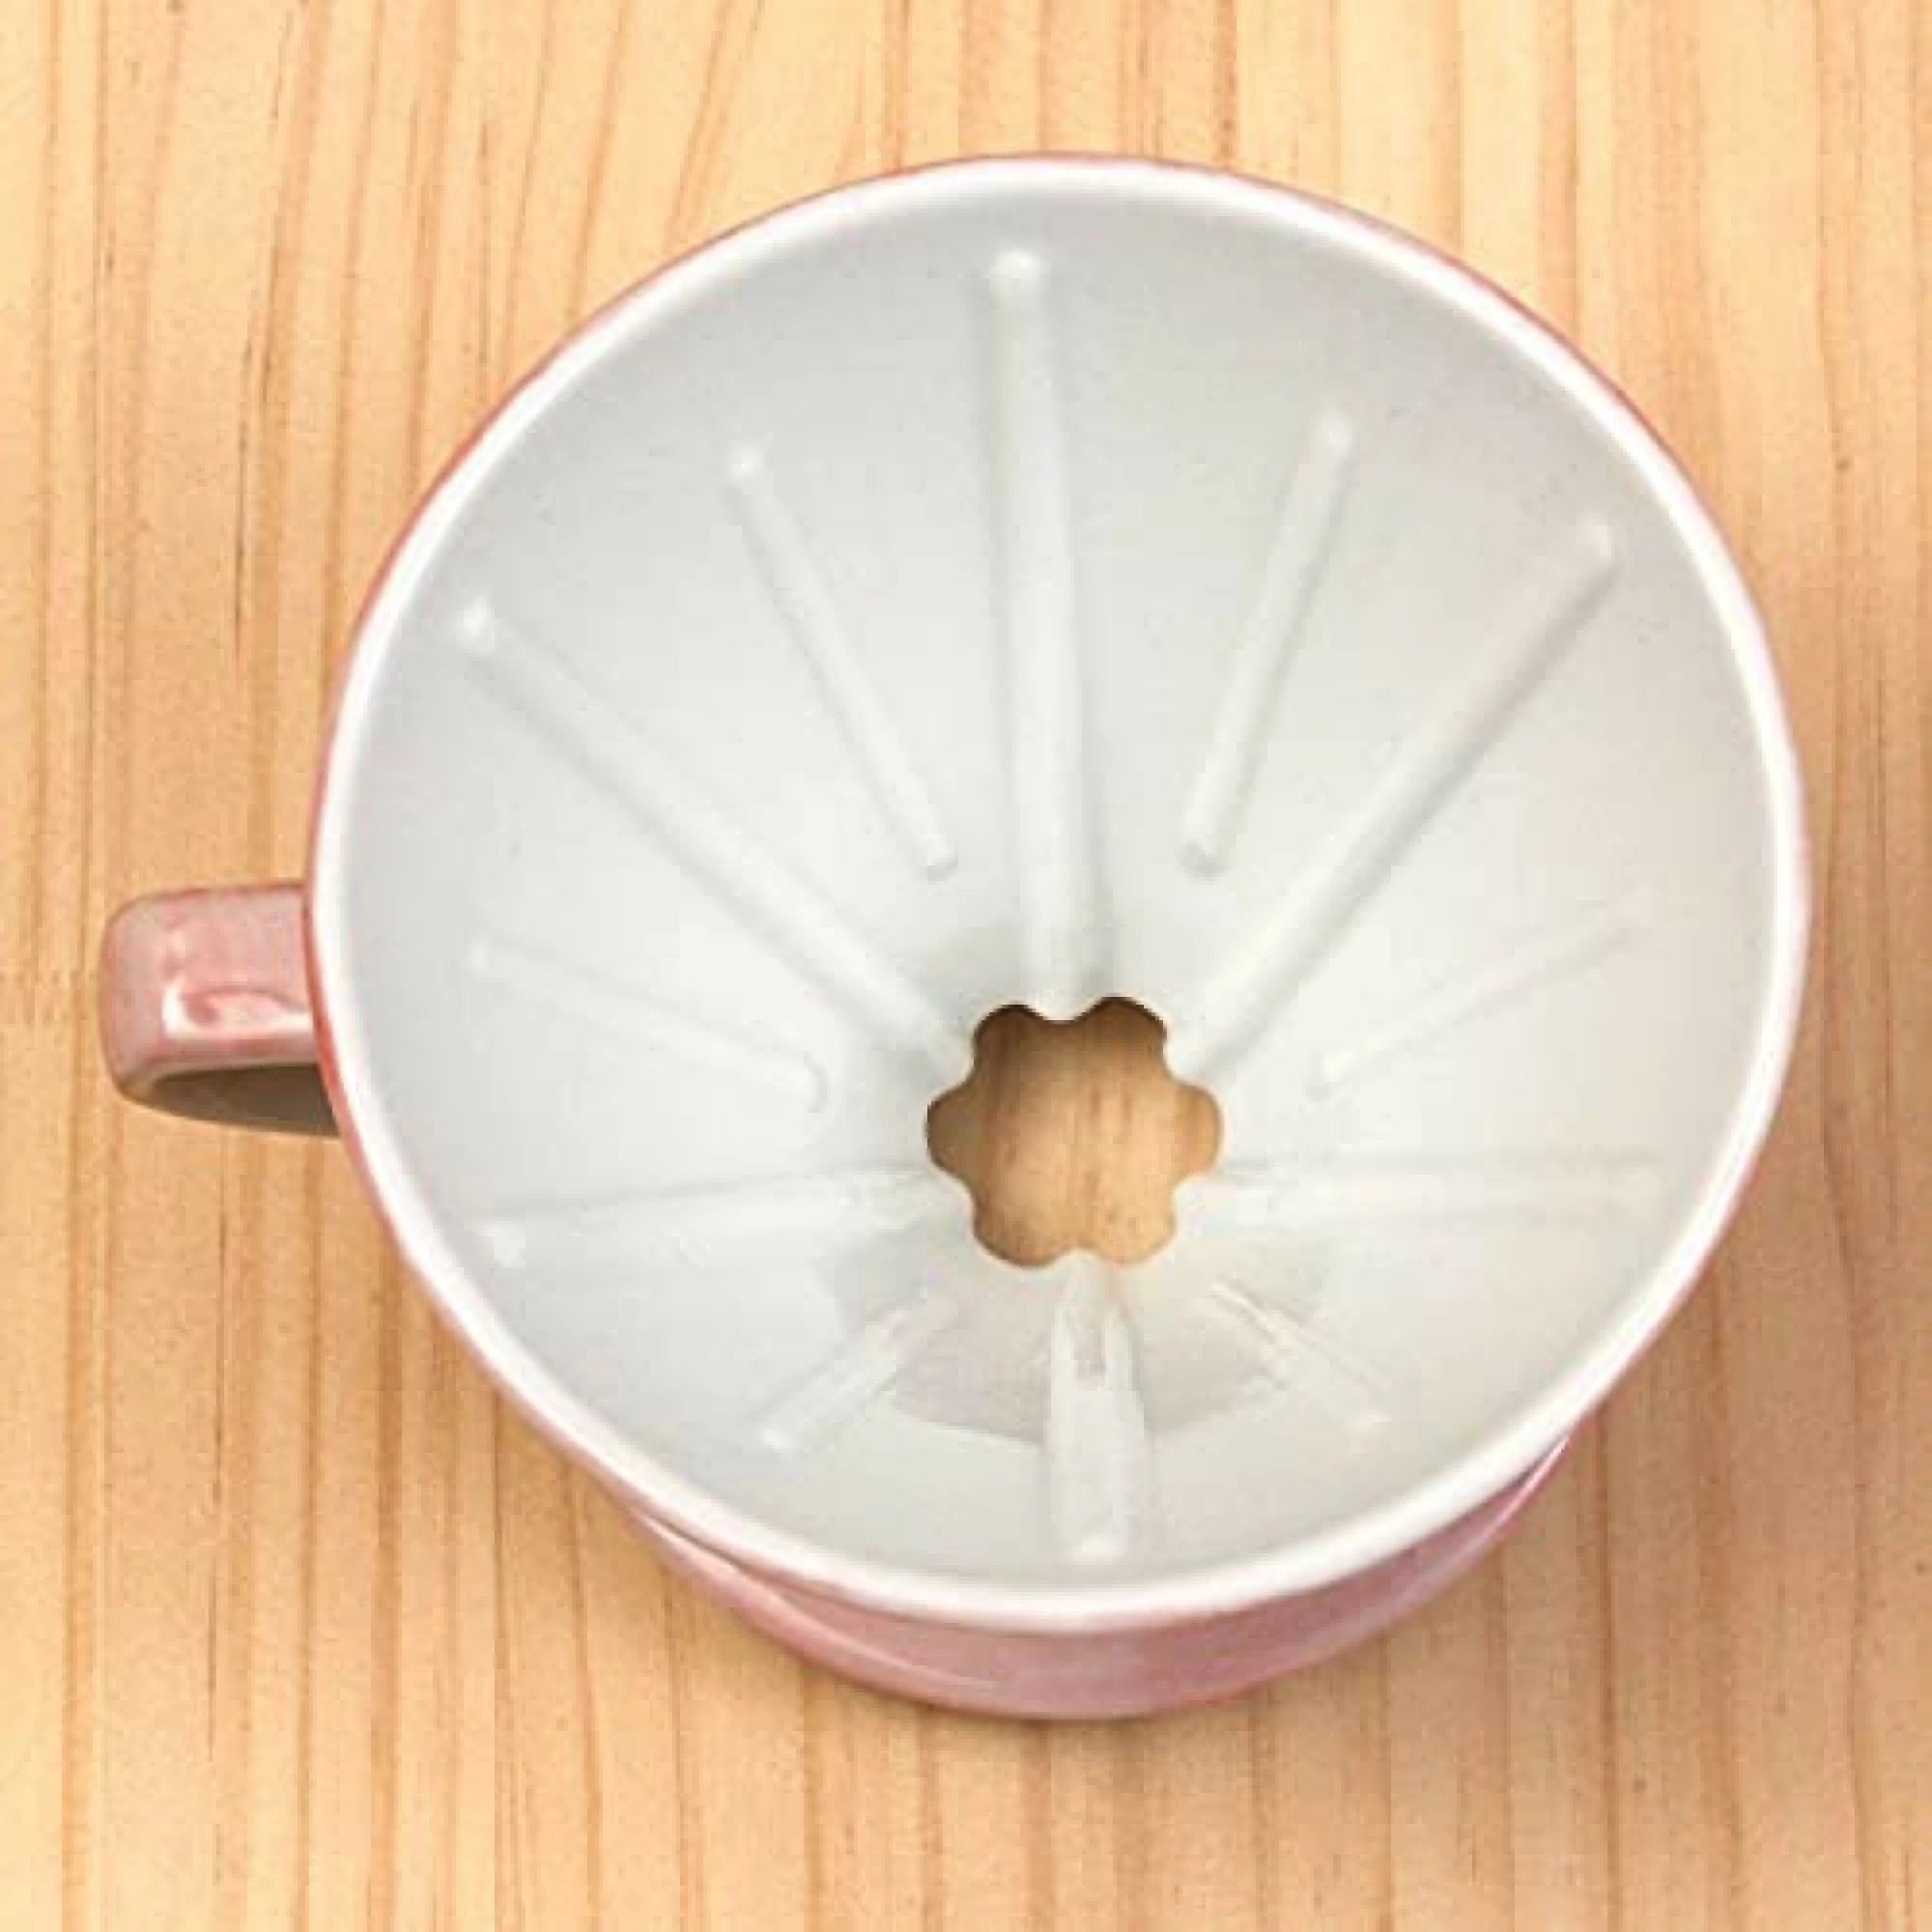 日本製 Bloom 弥生花 陶瓷濾杯 美濃燒 粉紅色